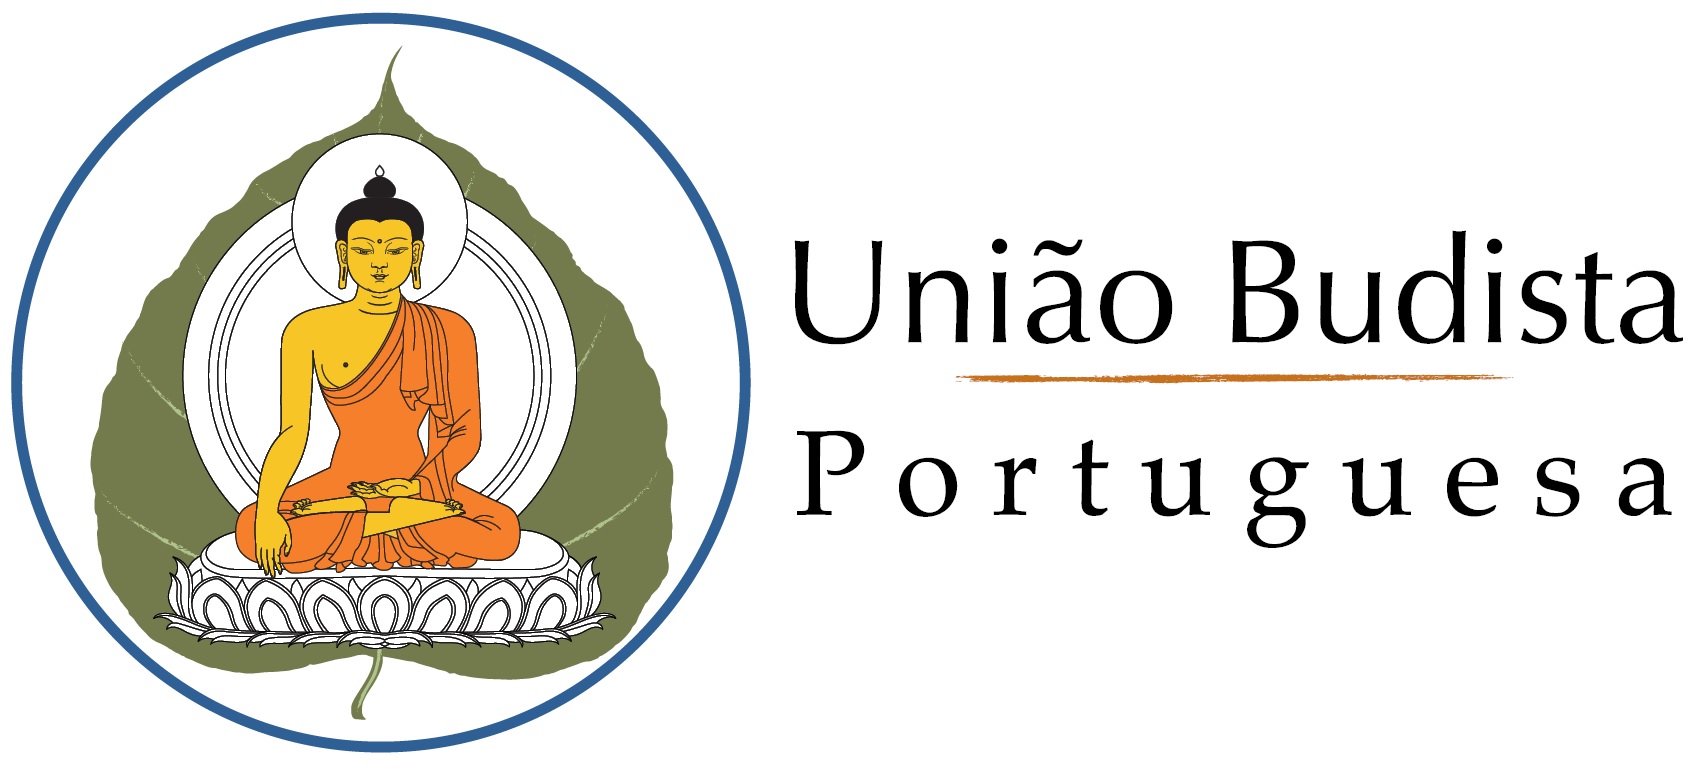 União Budista Portuguesa